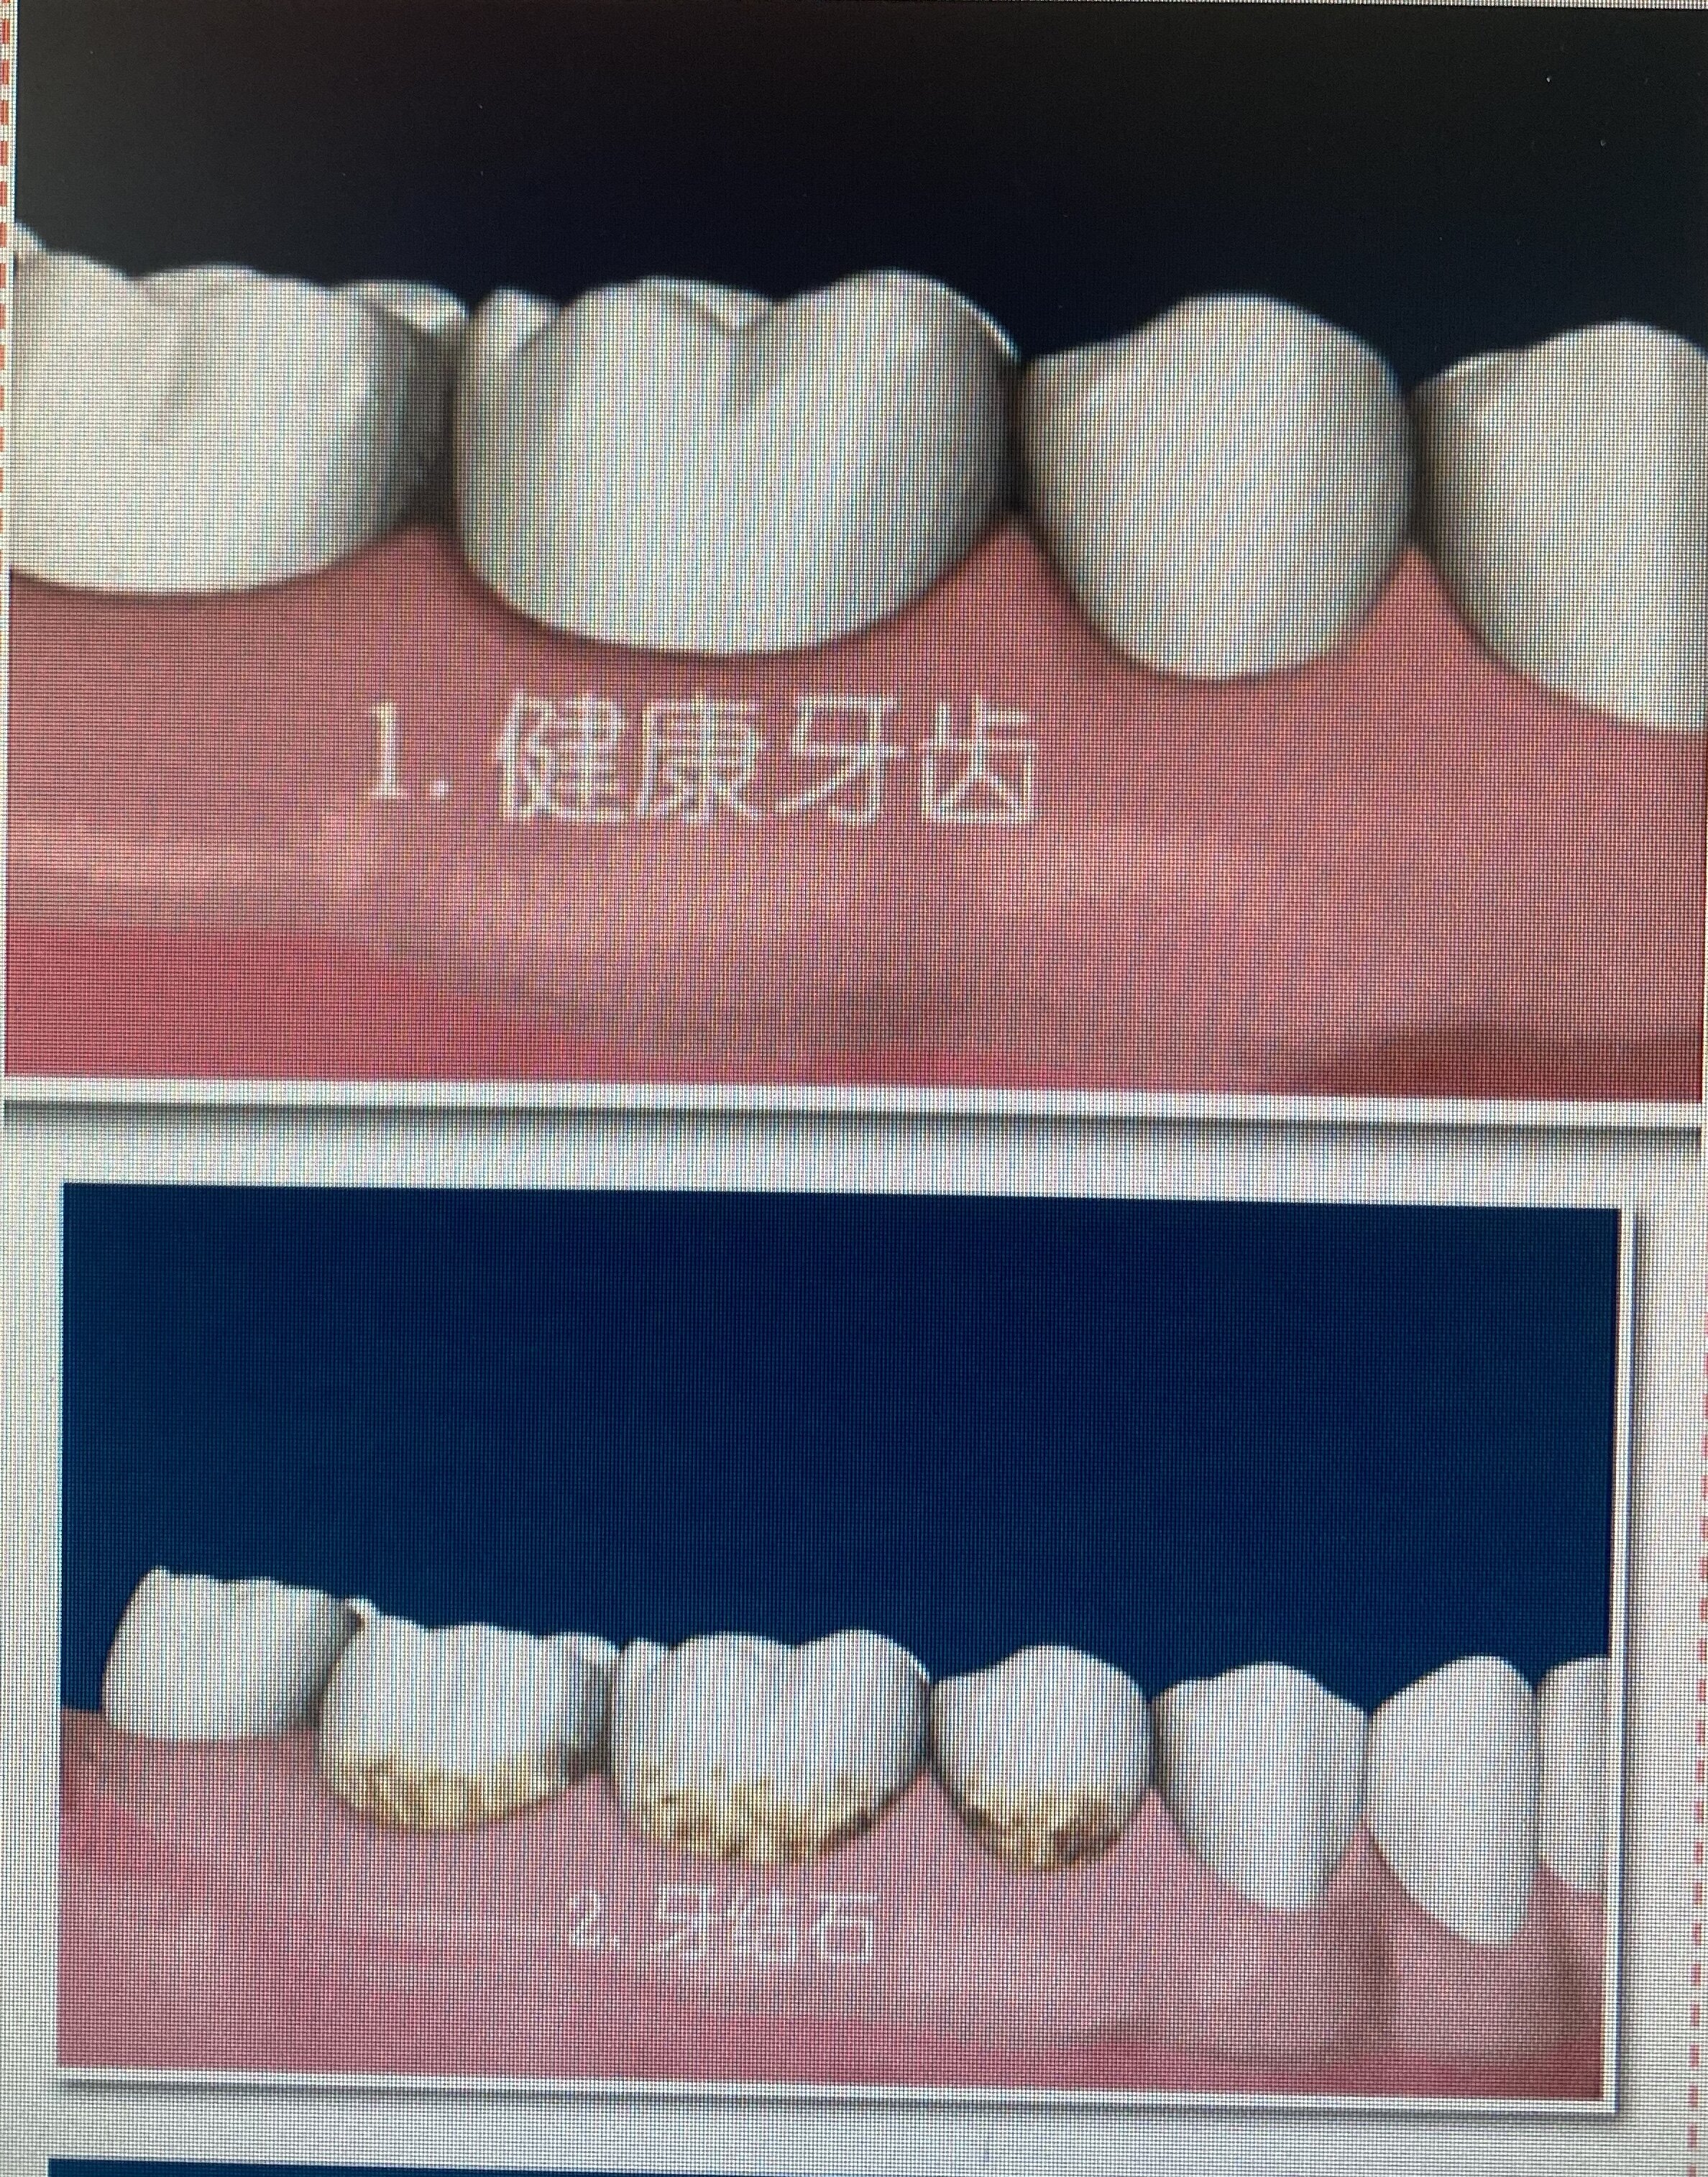 牙龈萎缩程度图片